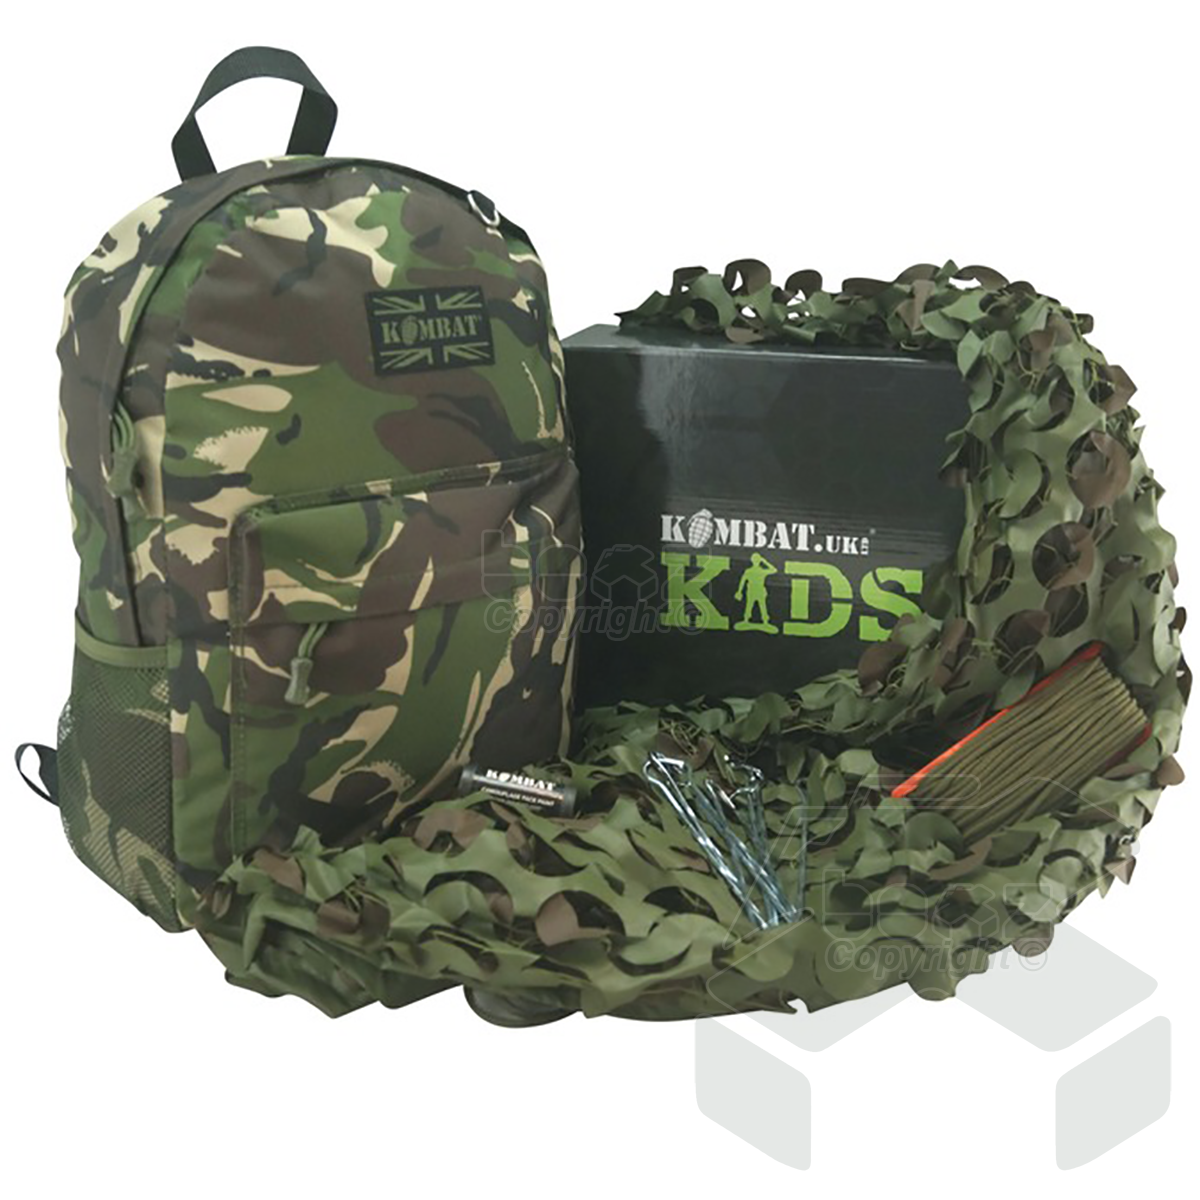 Kombat Kids Army Den Kit